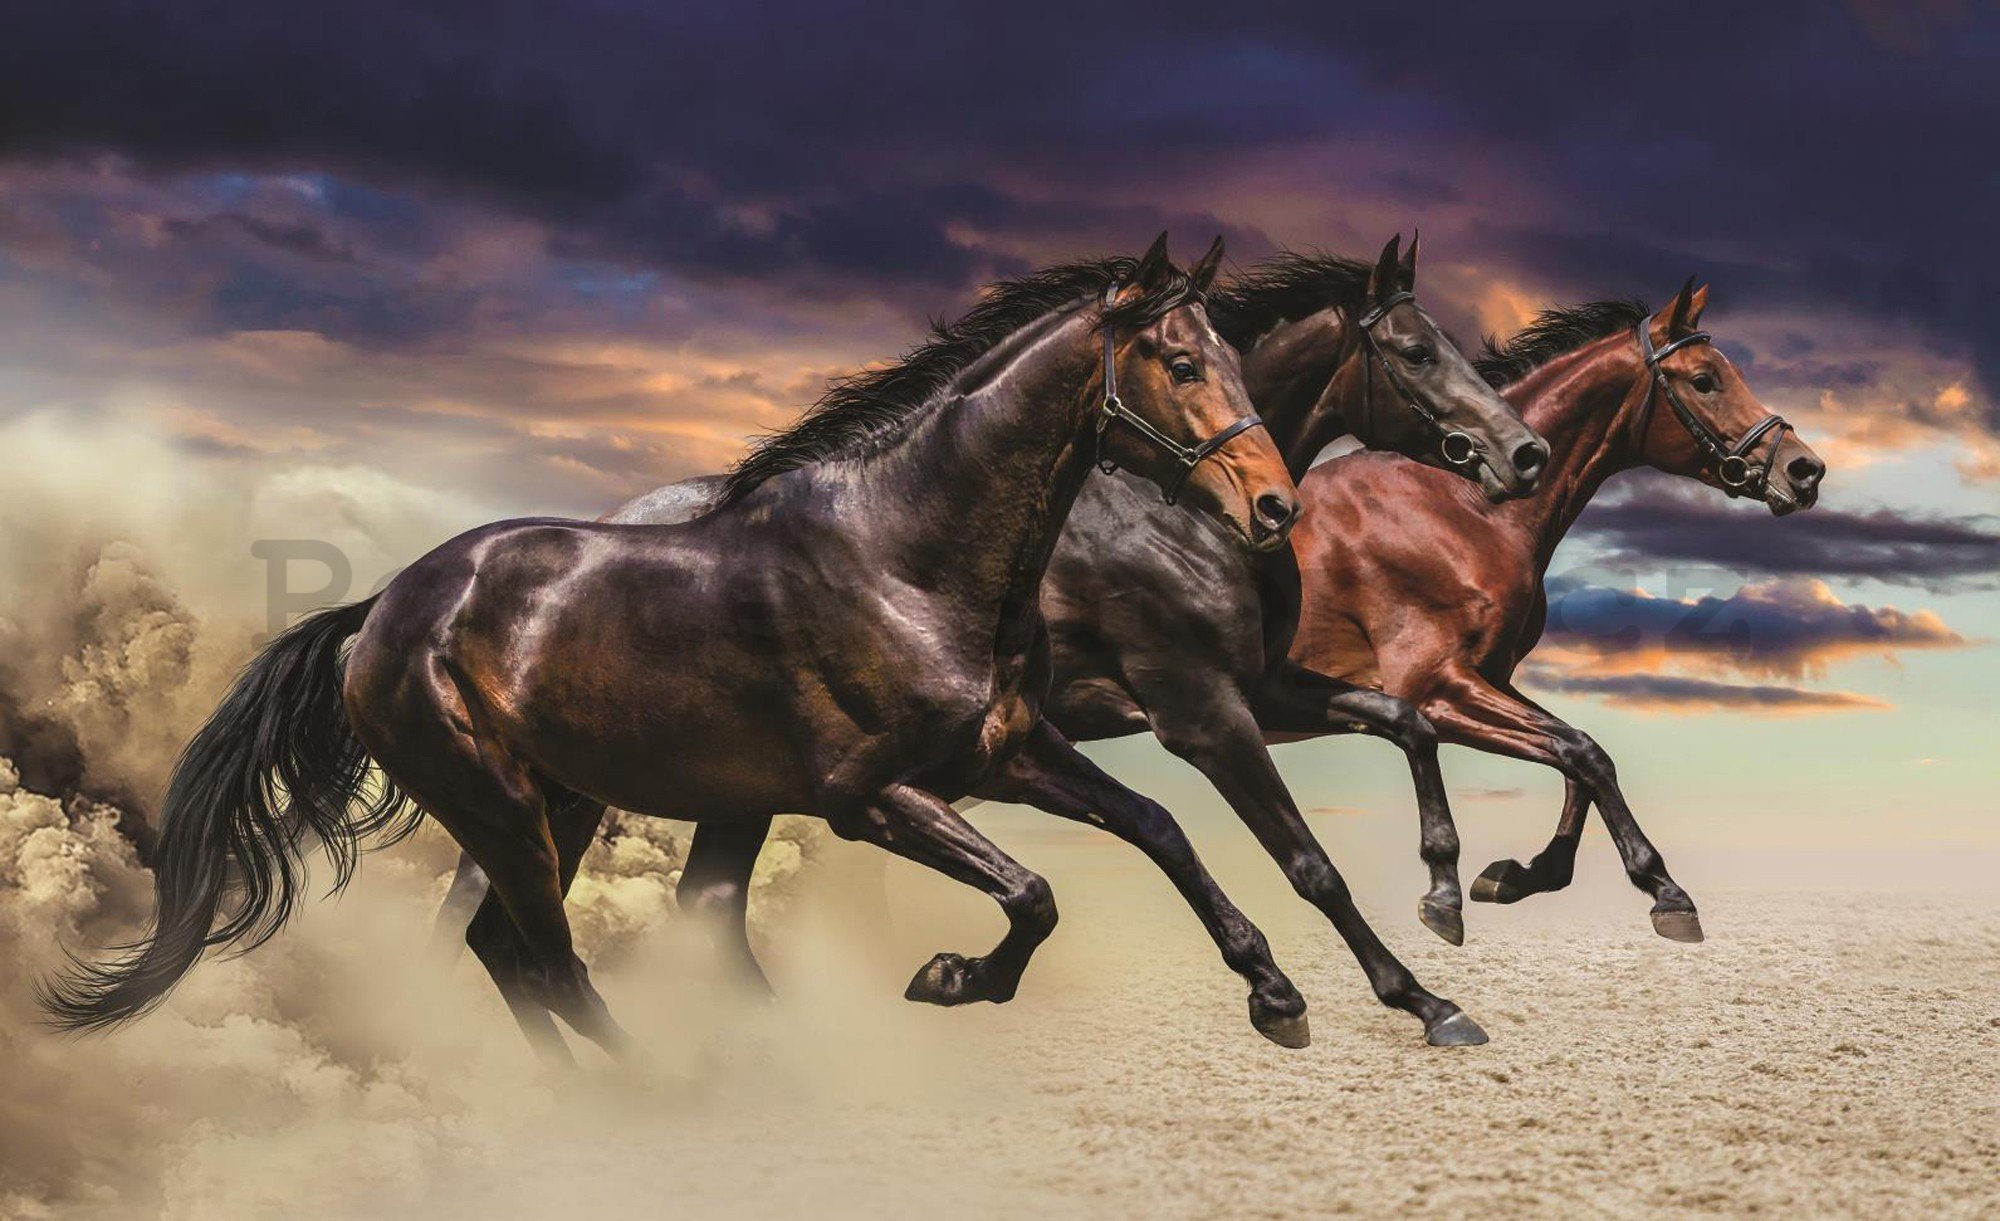 Fototapeta vliesová: Cvalájící koně - 416x254 cm